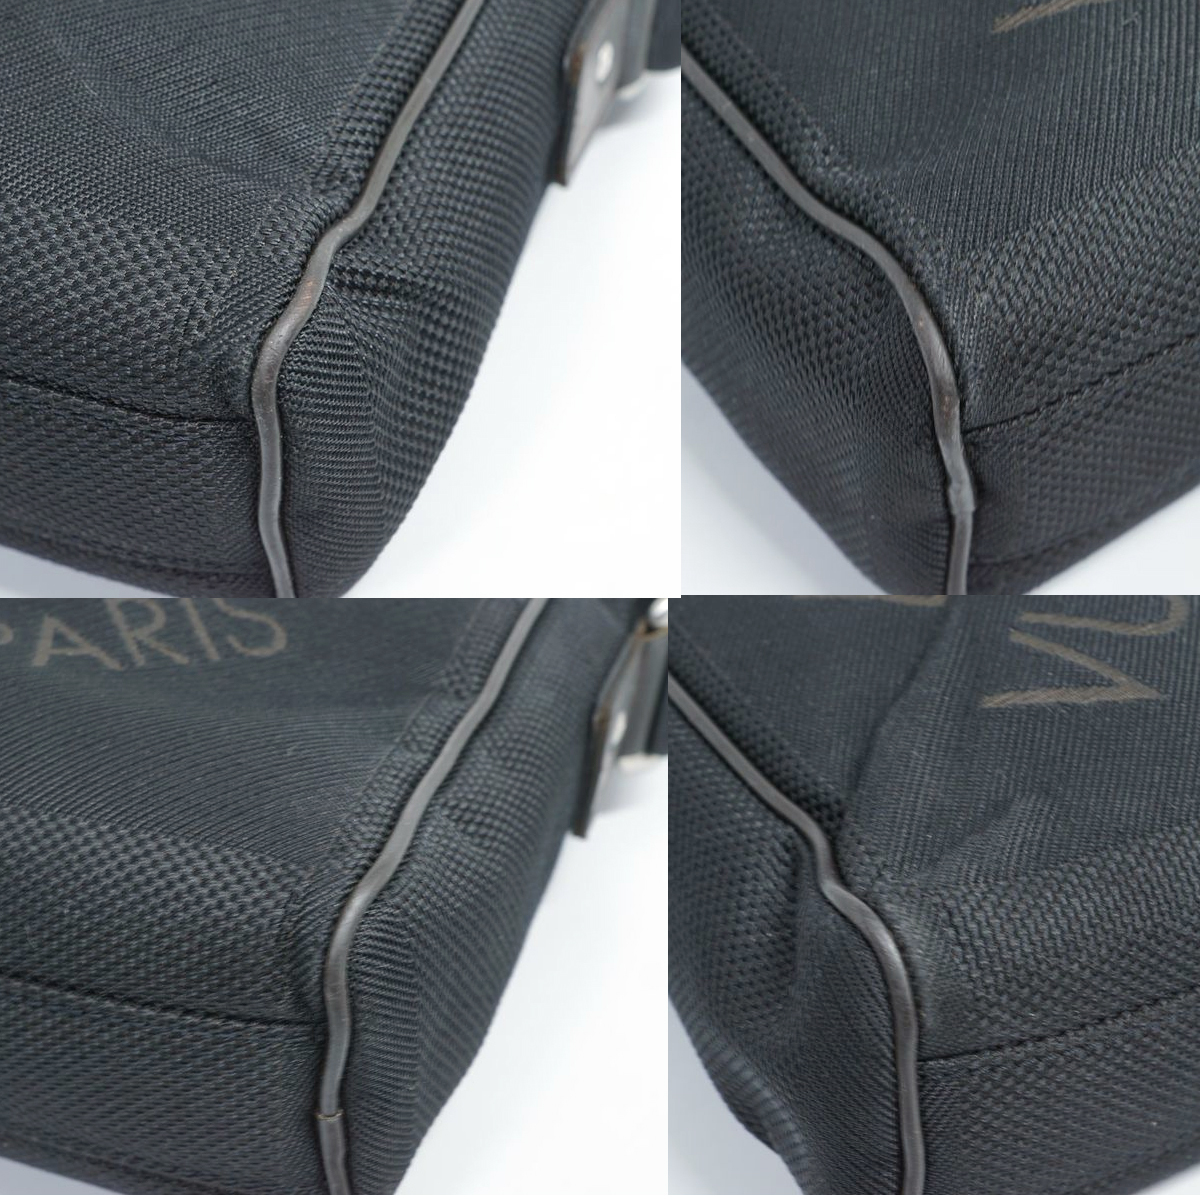 【美品】Louis Vuitton ダミエジェアン シタダンNM ショルダーバッグ 鞄 ノワール 黒 ブラック DAMIERGEANT メンズ レディース M93223